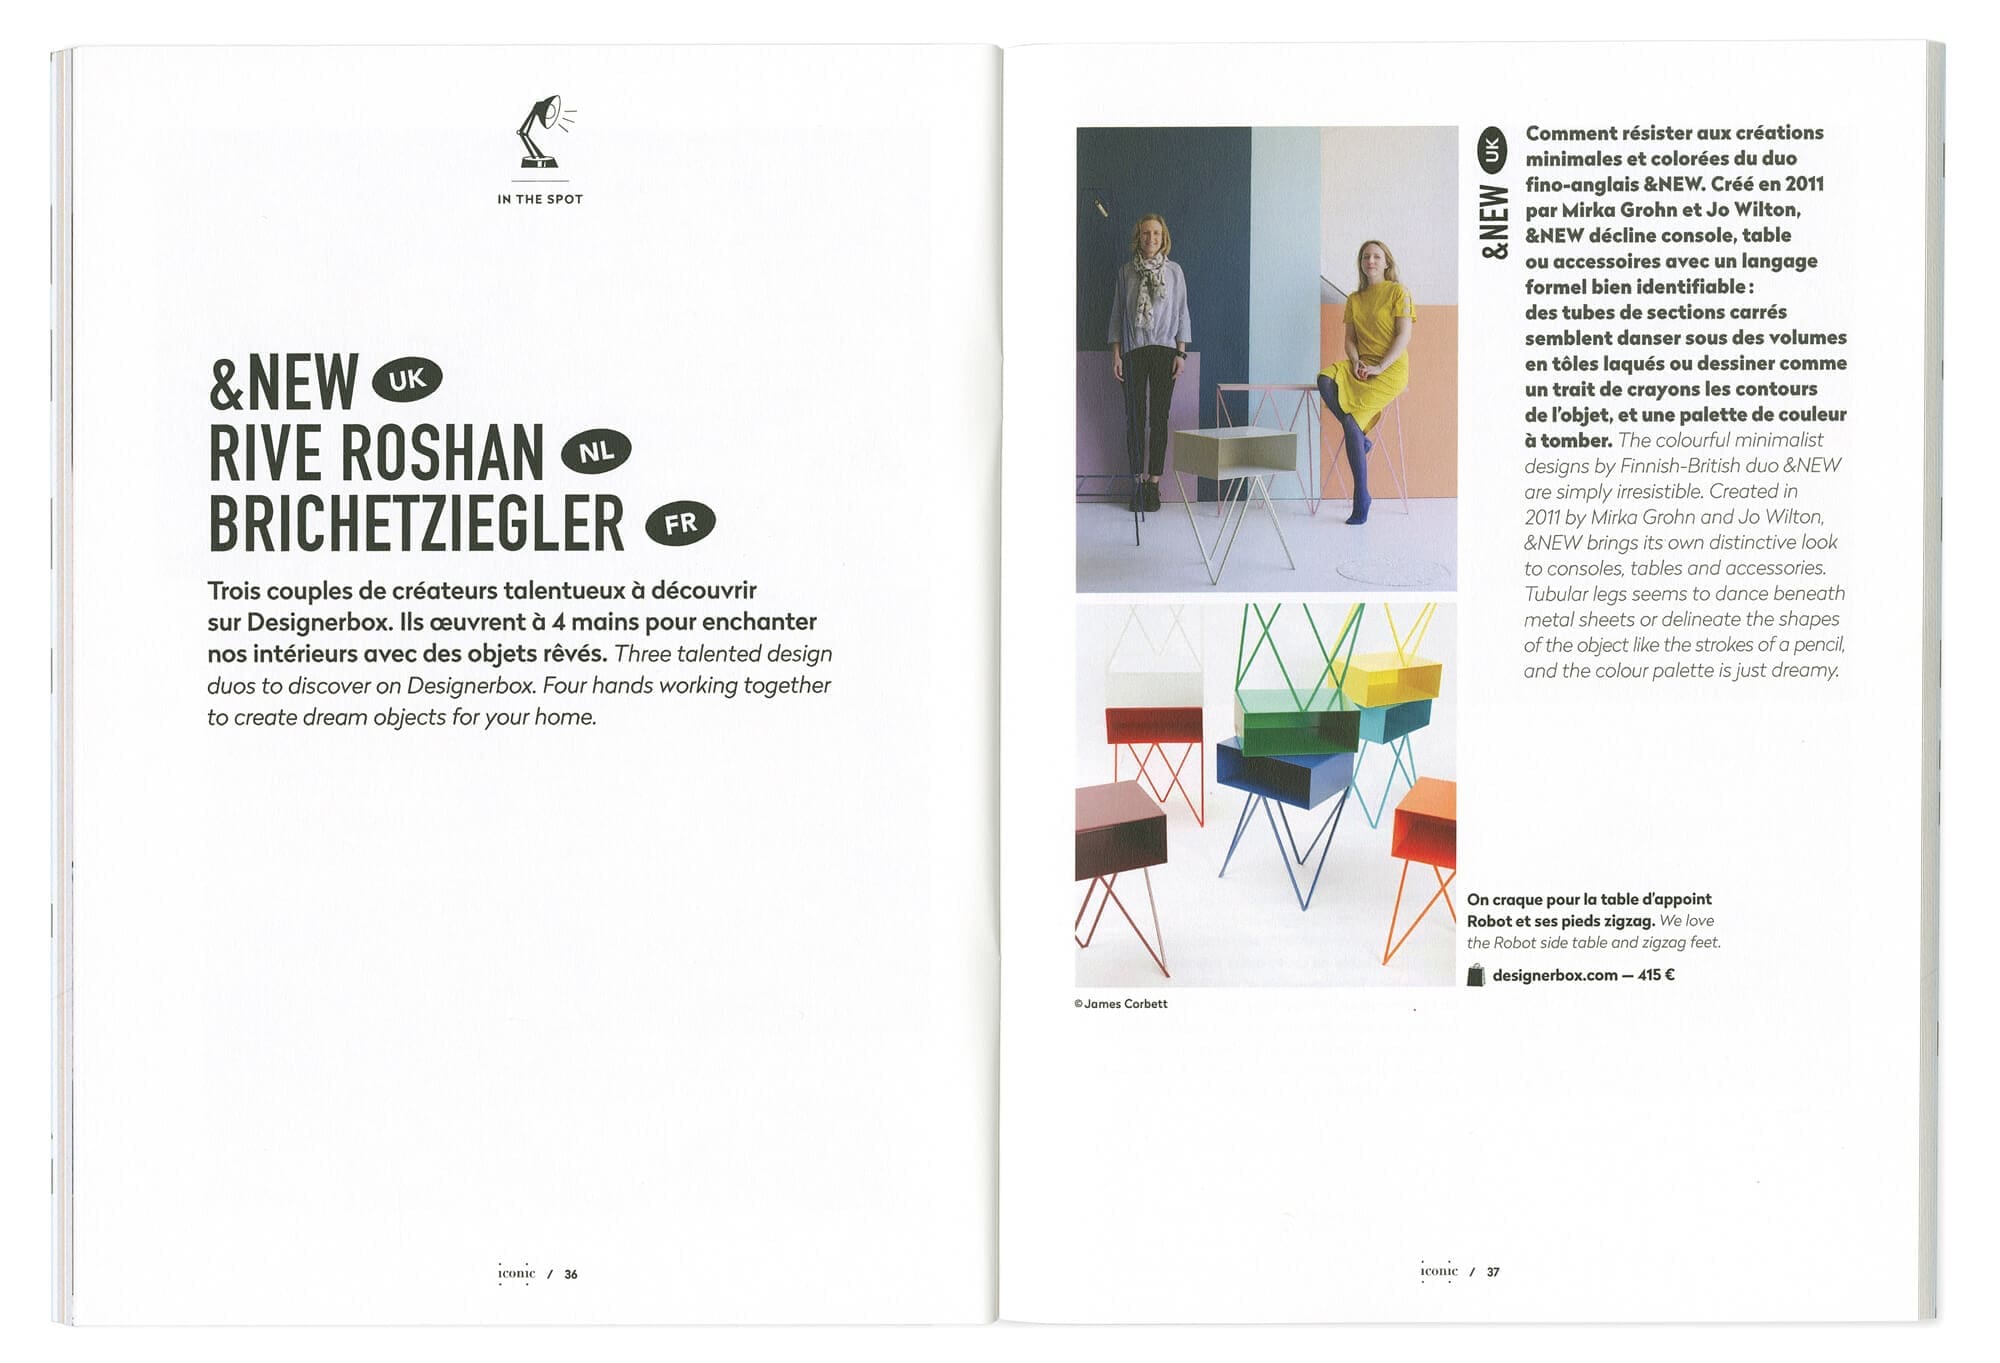 ichetkar dessine la maquette du magazine destiné a label famille, premier numéro du magazine de designerbox